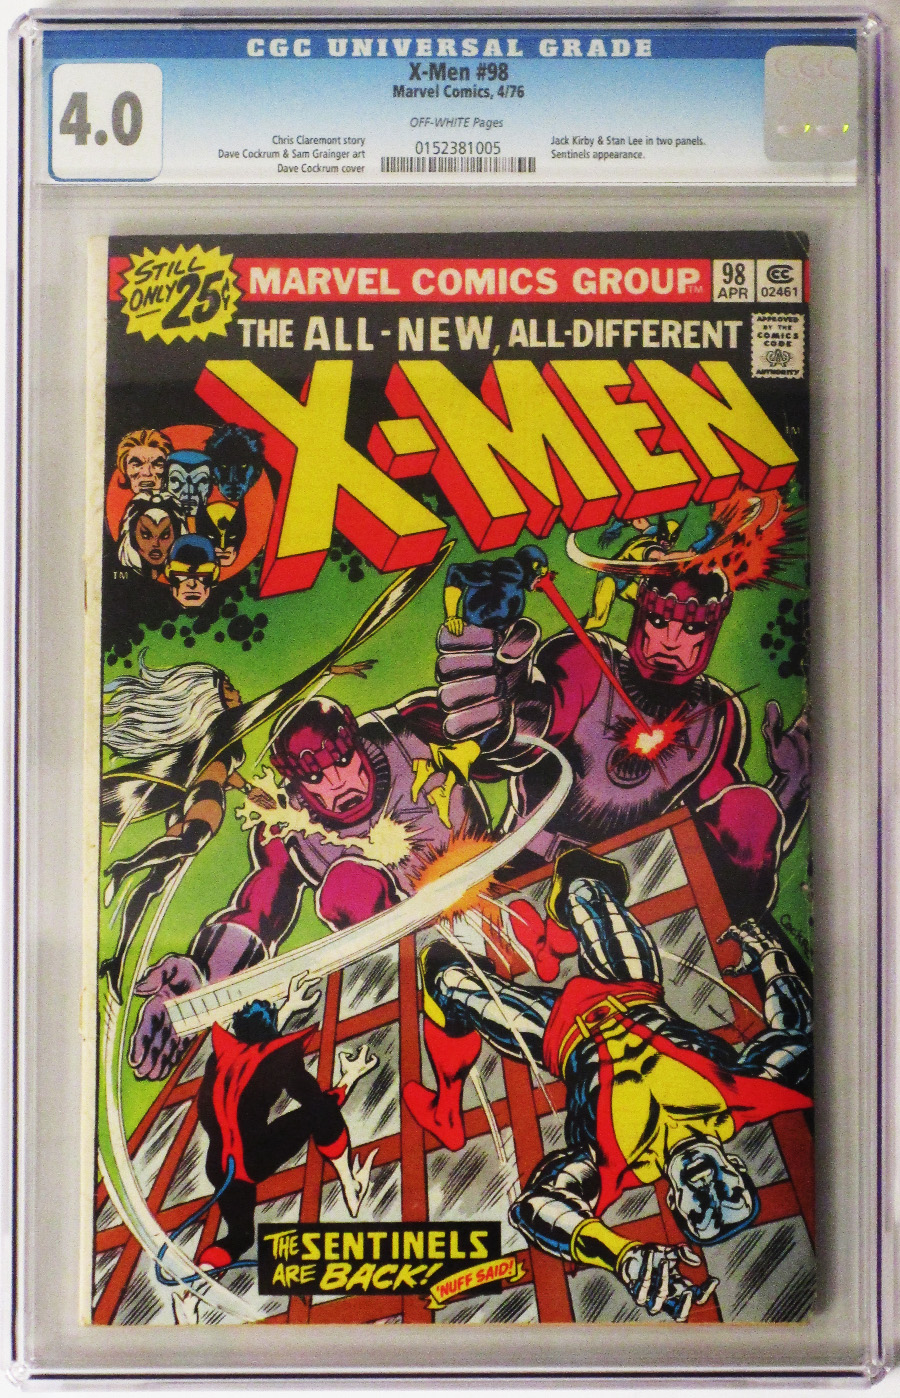 X-Men Vol 1 #98 Cover C CGC 4.0 25-Cent Regular Cover